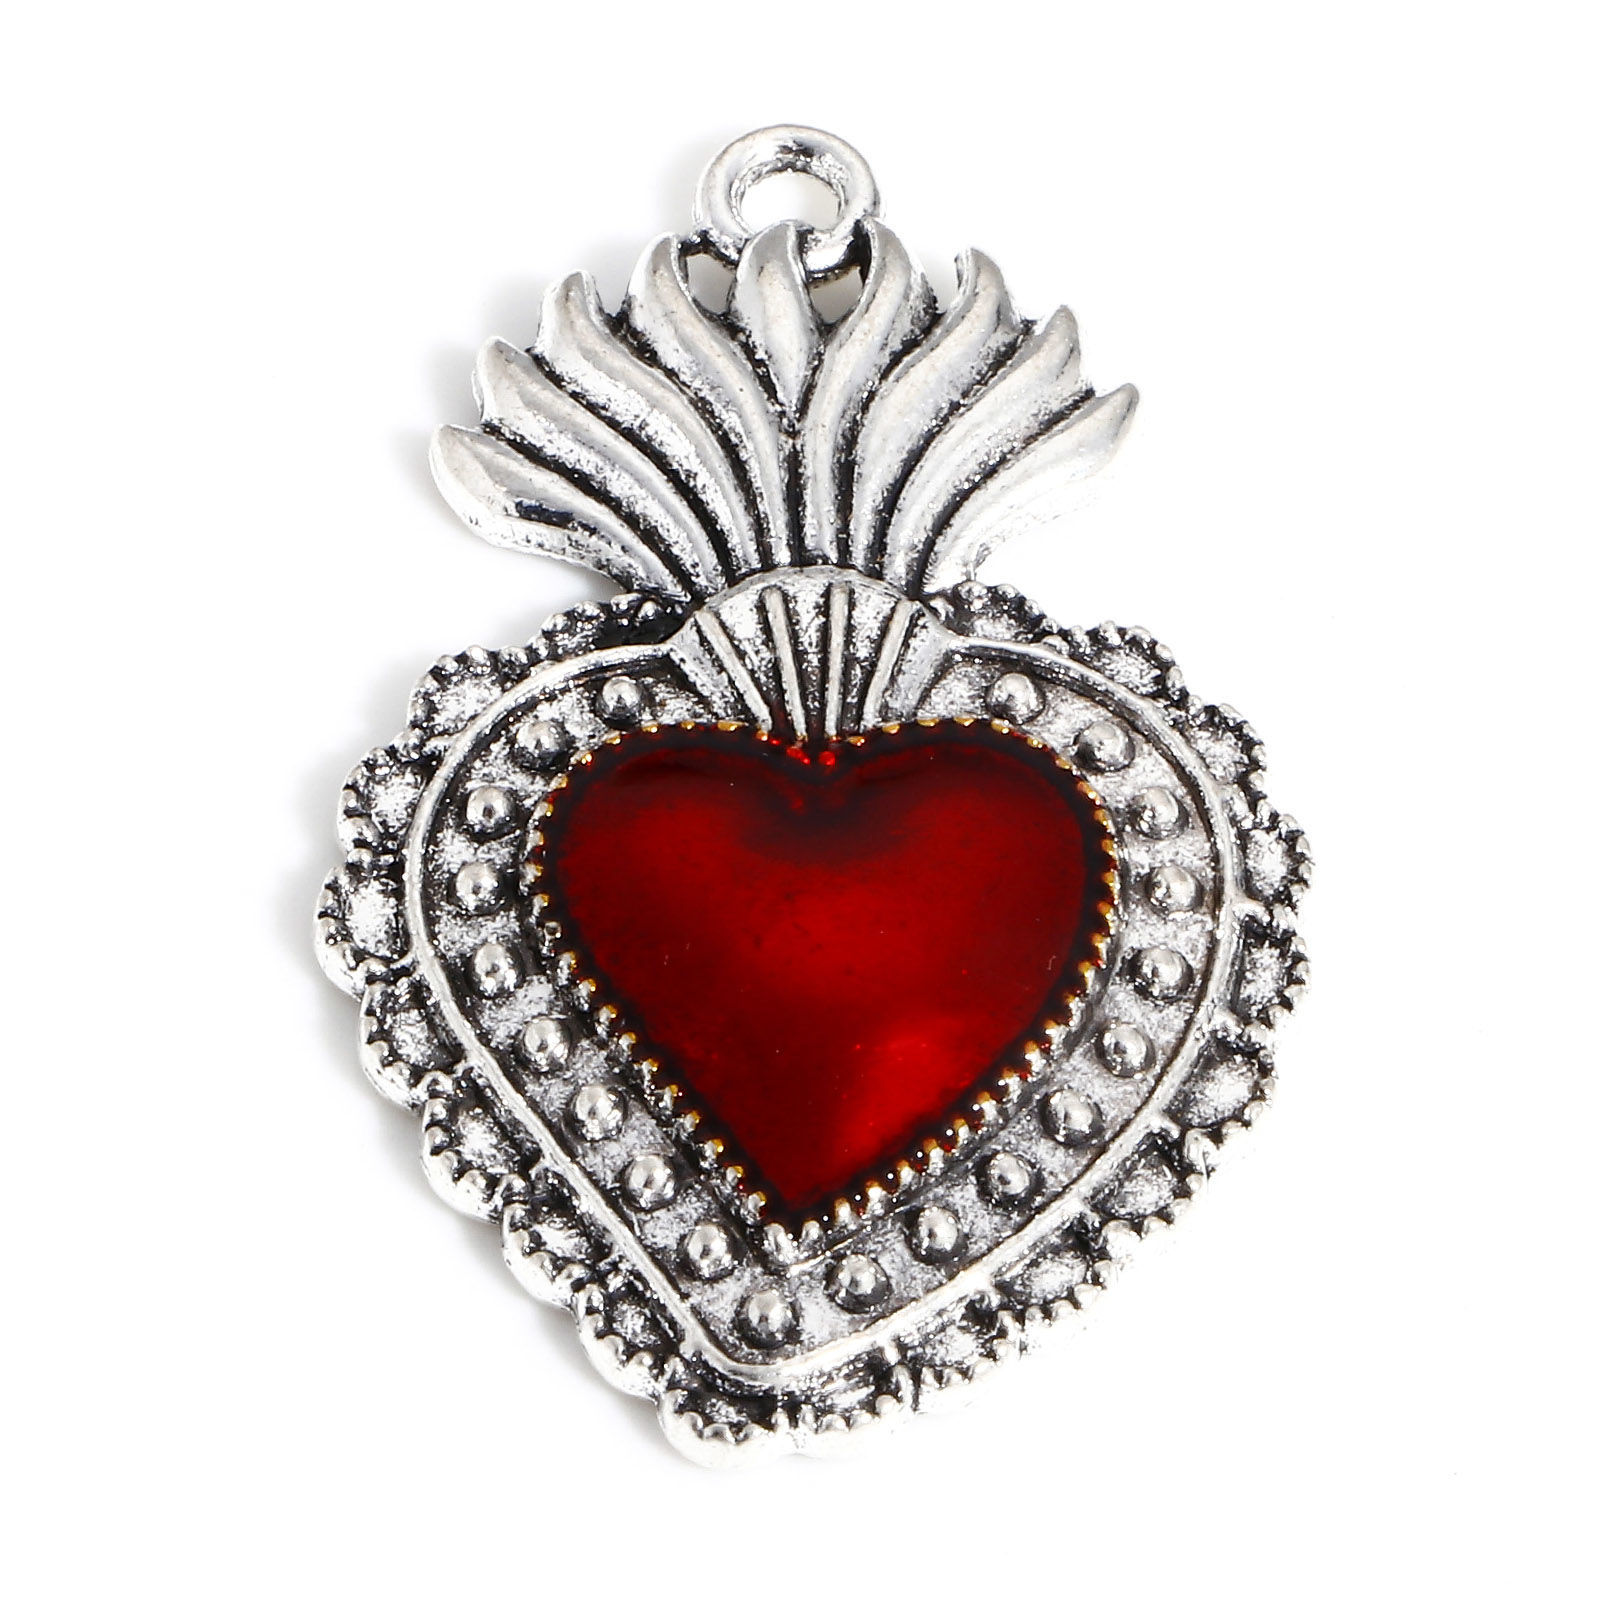 Picture of Zinc Based Alloy Religious Pendants Antique Silver Color Red Ex Voto Heart Enamel 3.6cm x 2.2cm, 5 PCs